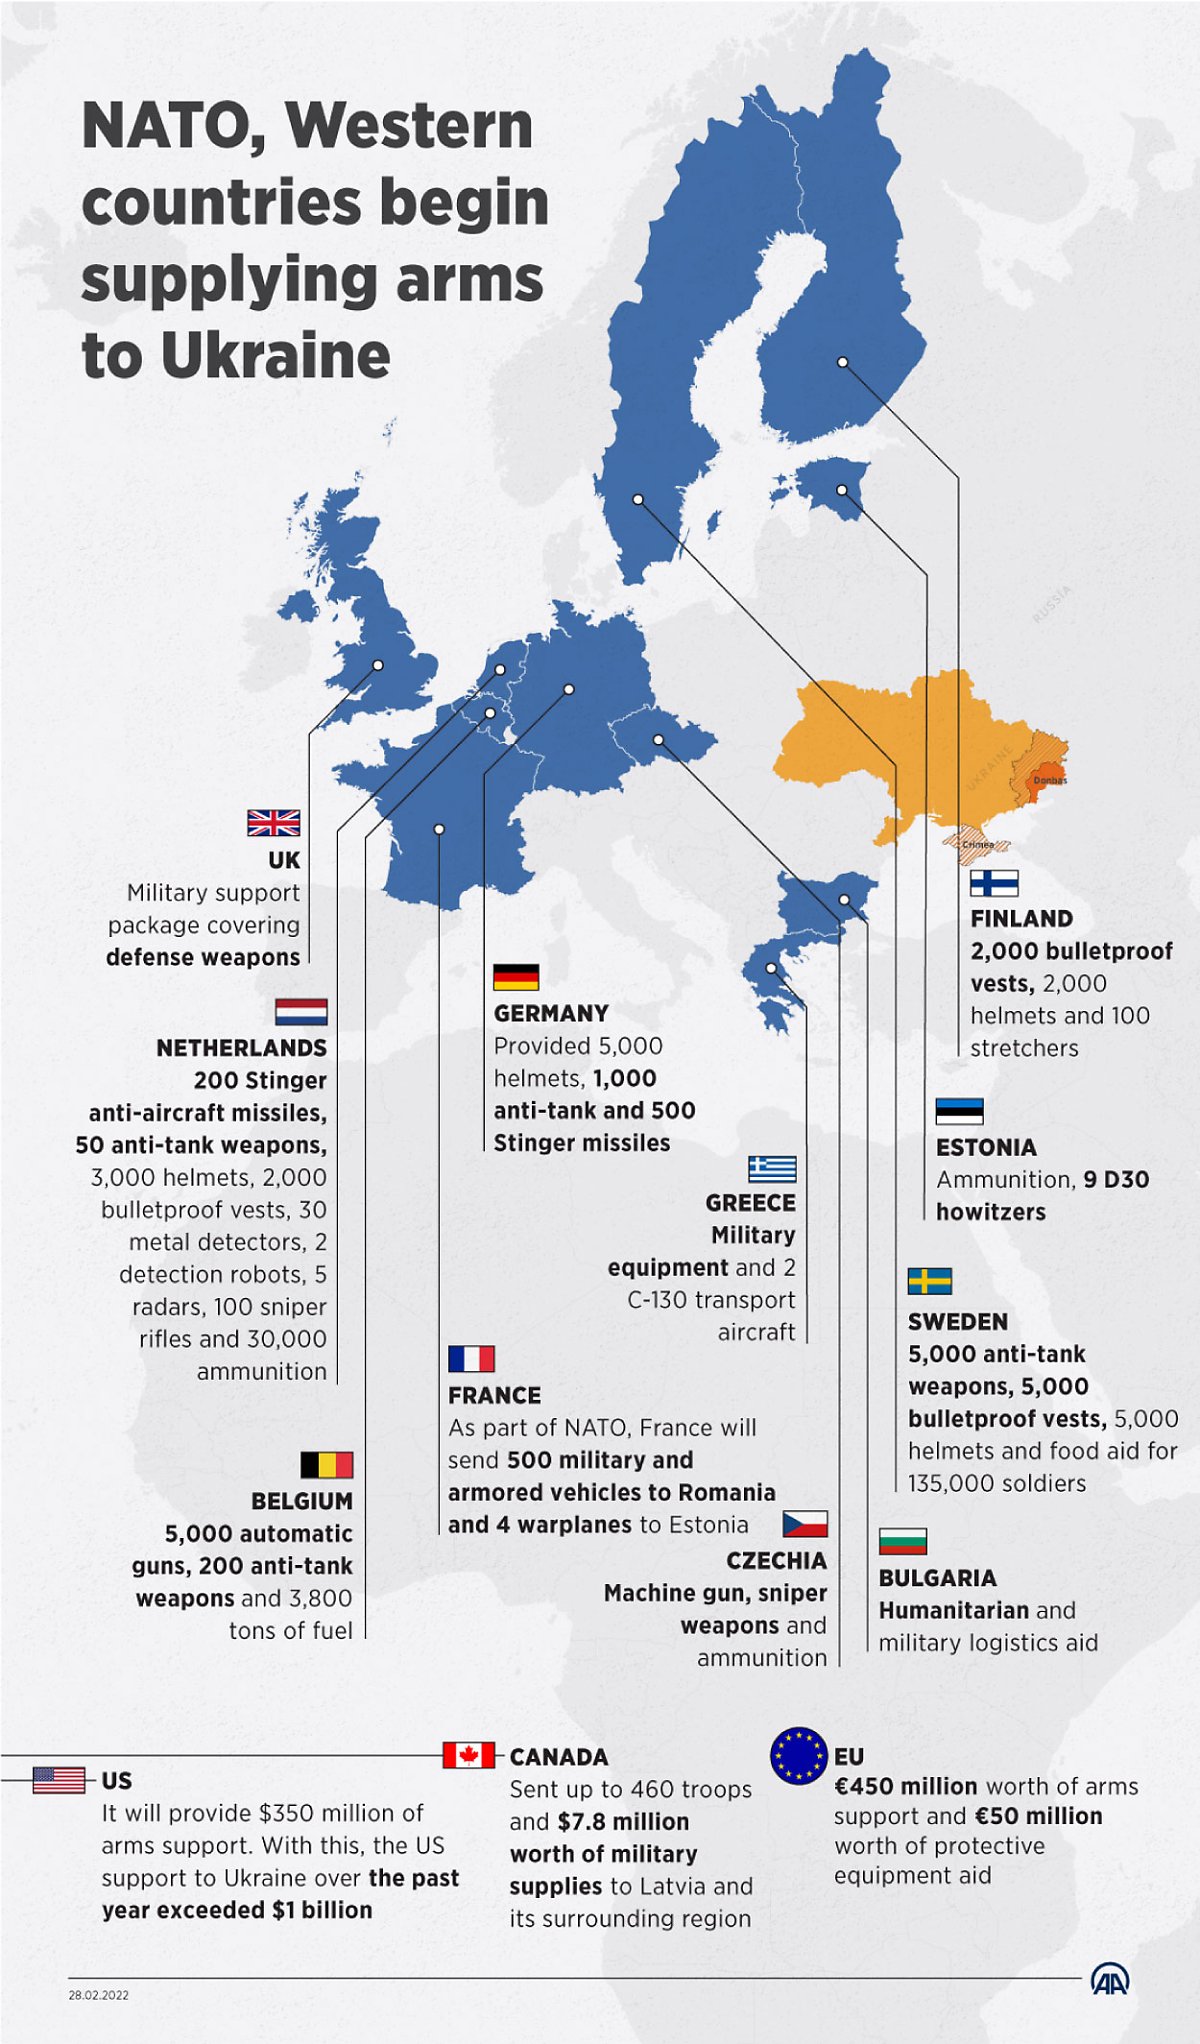 2월 28일 현재 나토와 서방 국가에서 우크라이나에 제공한 군사 지원 현황. <출처: https://www.aa.com.tr/en/russia-ukraine-crisis/nato-western-countries-begin-arm-supplies-to-ukraine/2517942>